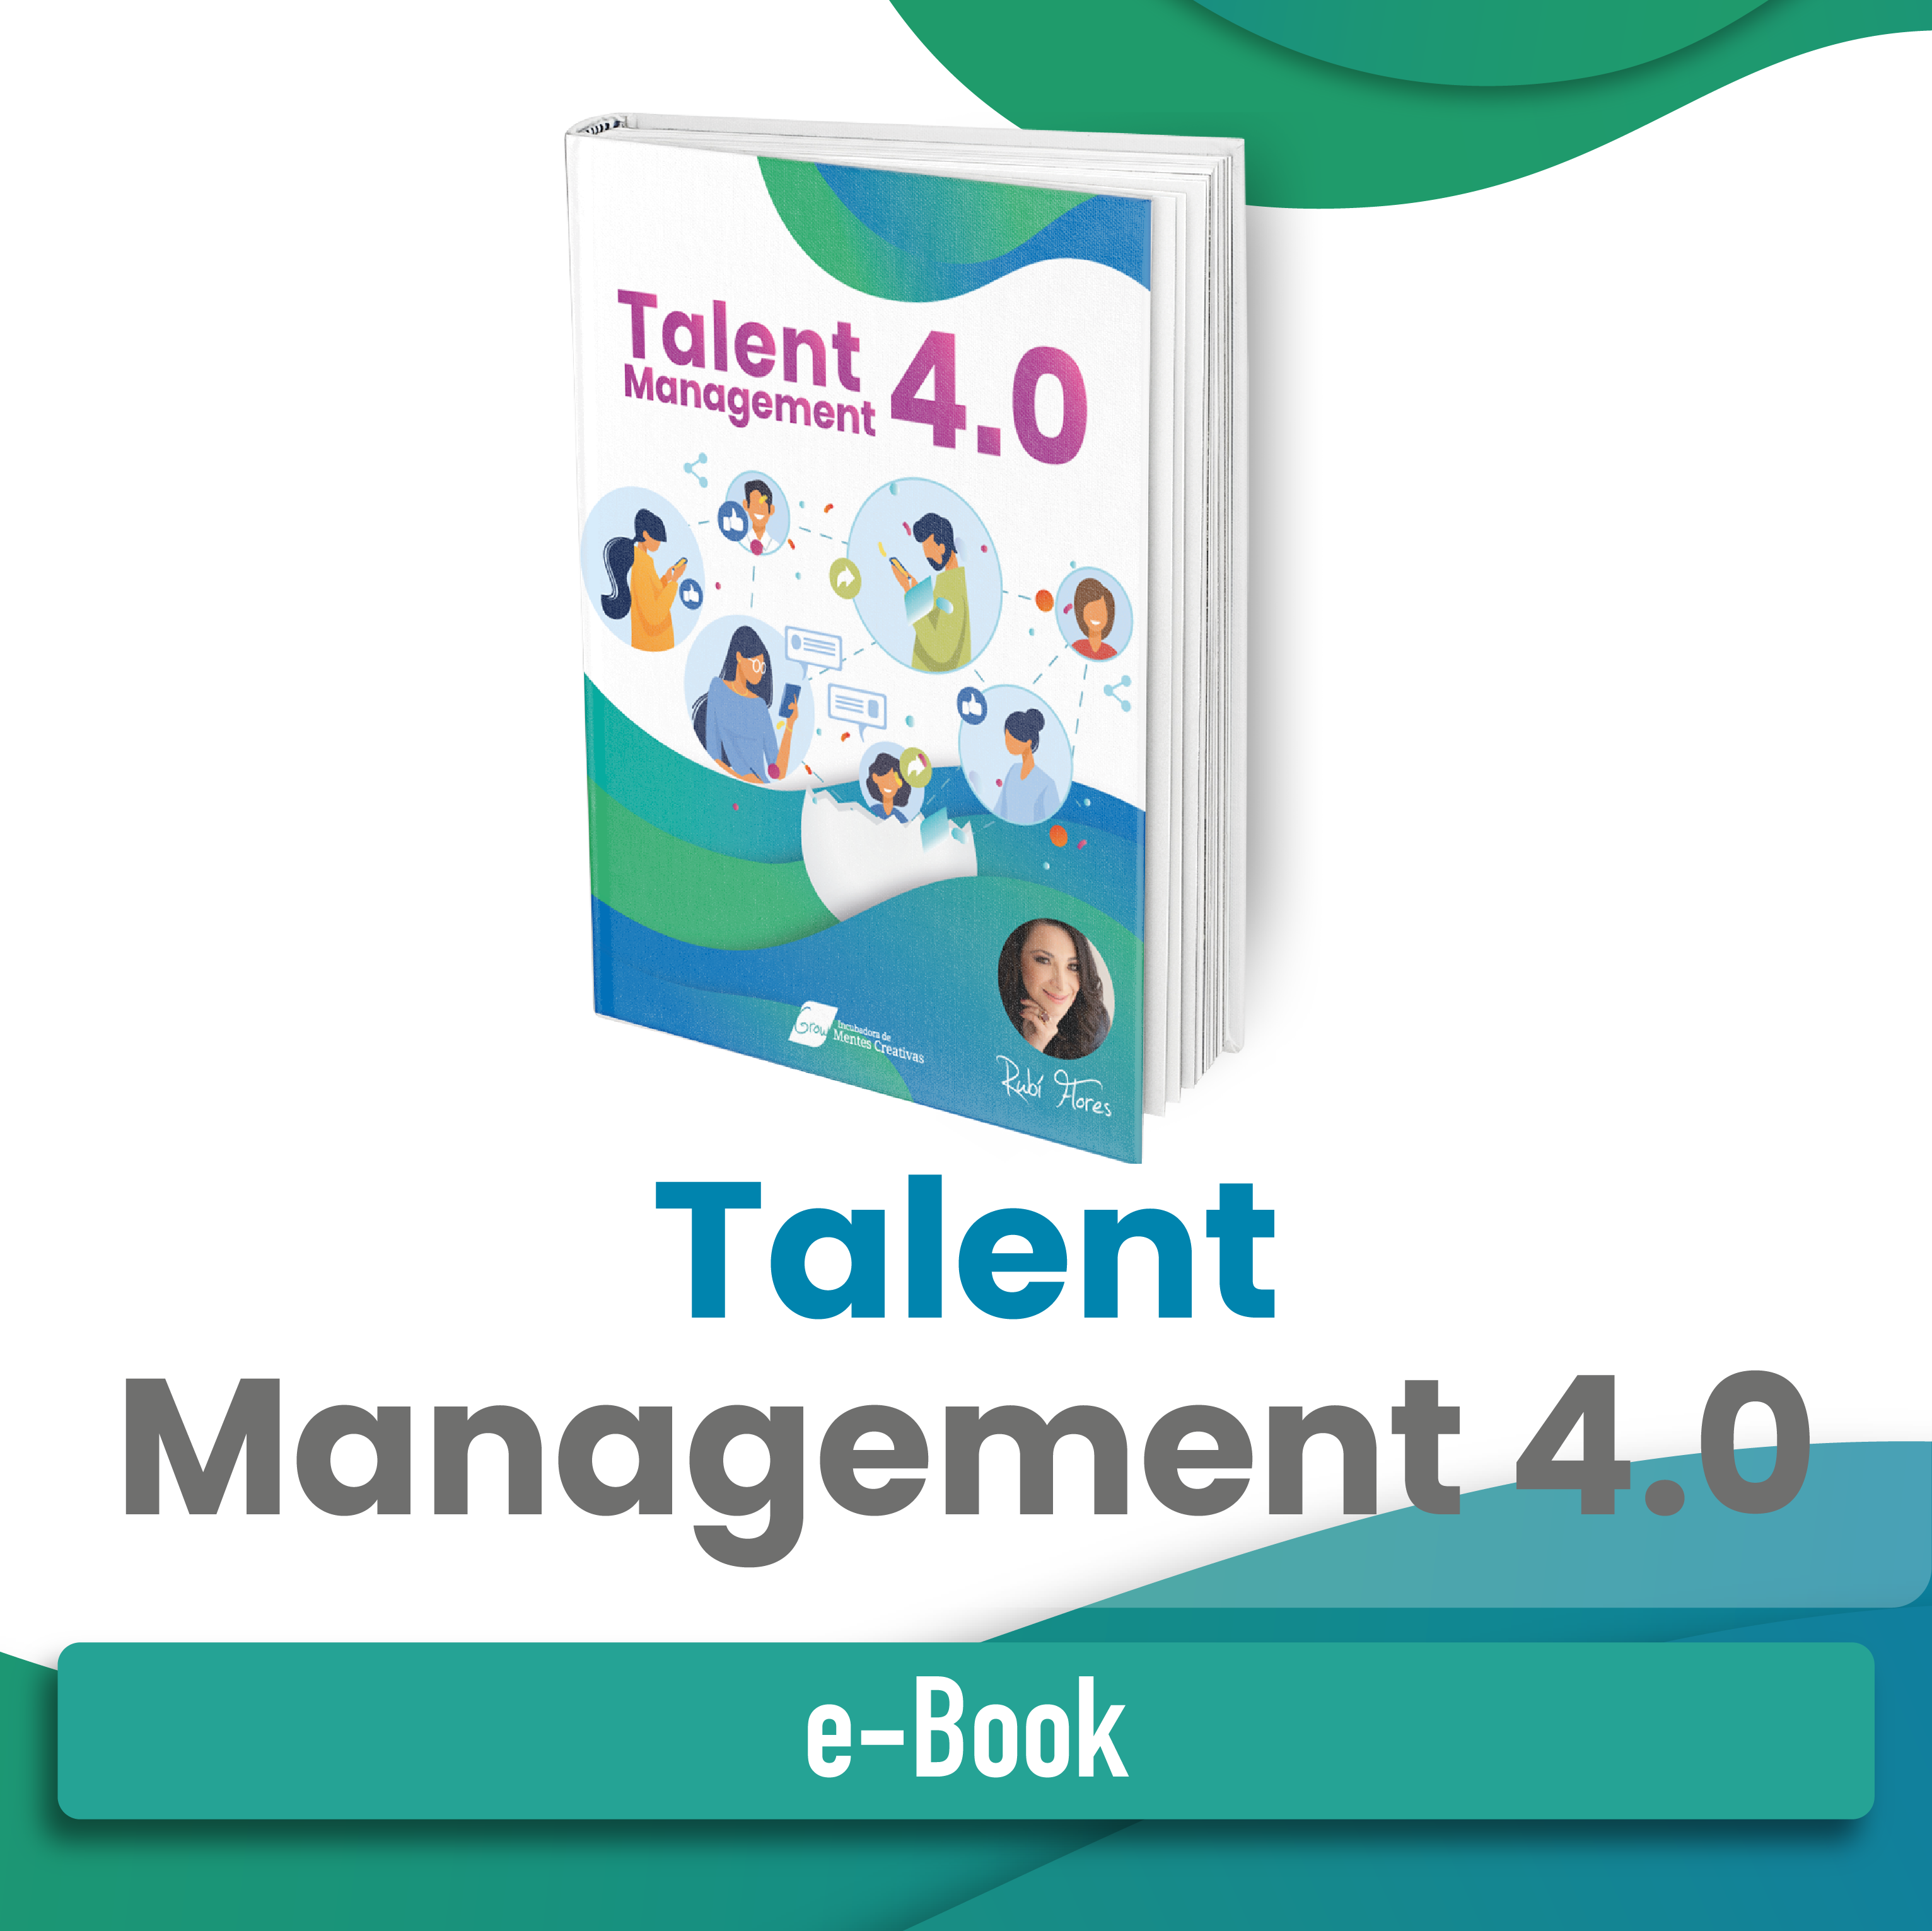 Talent Managament 4.0